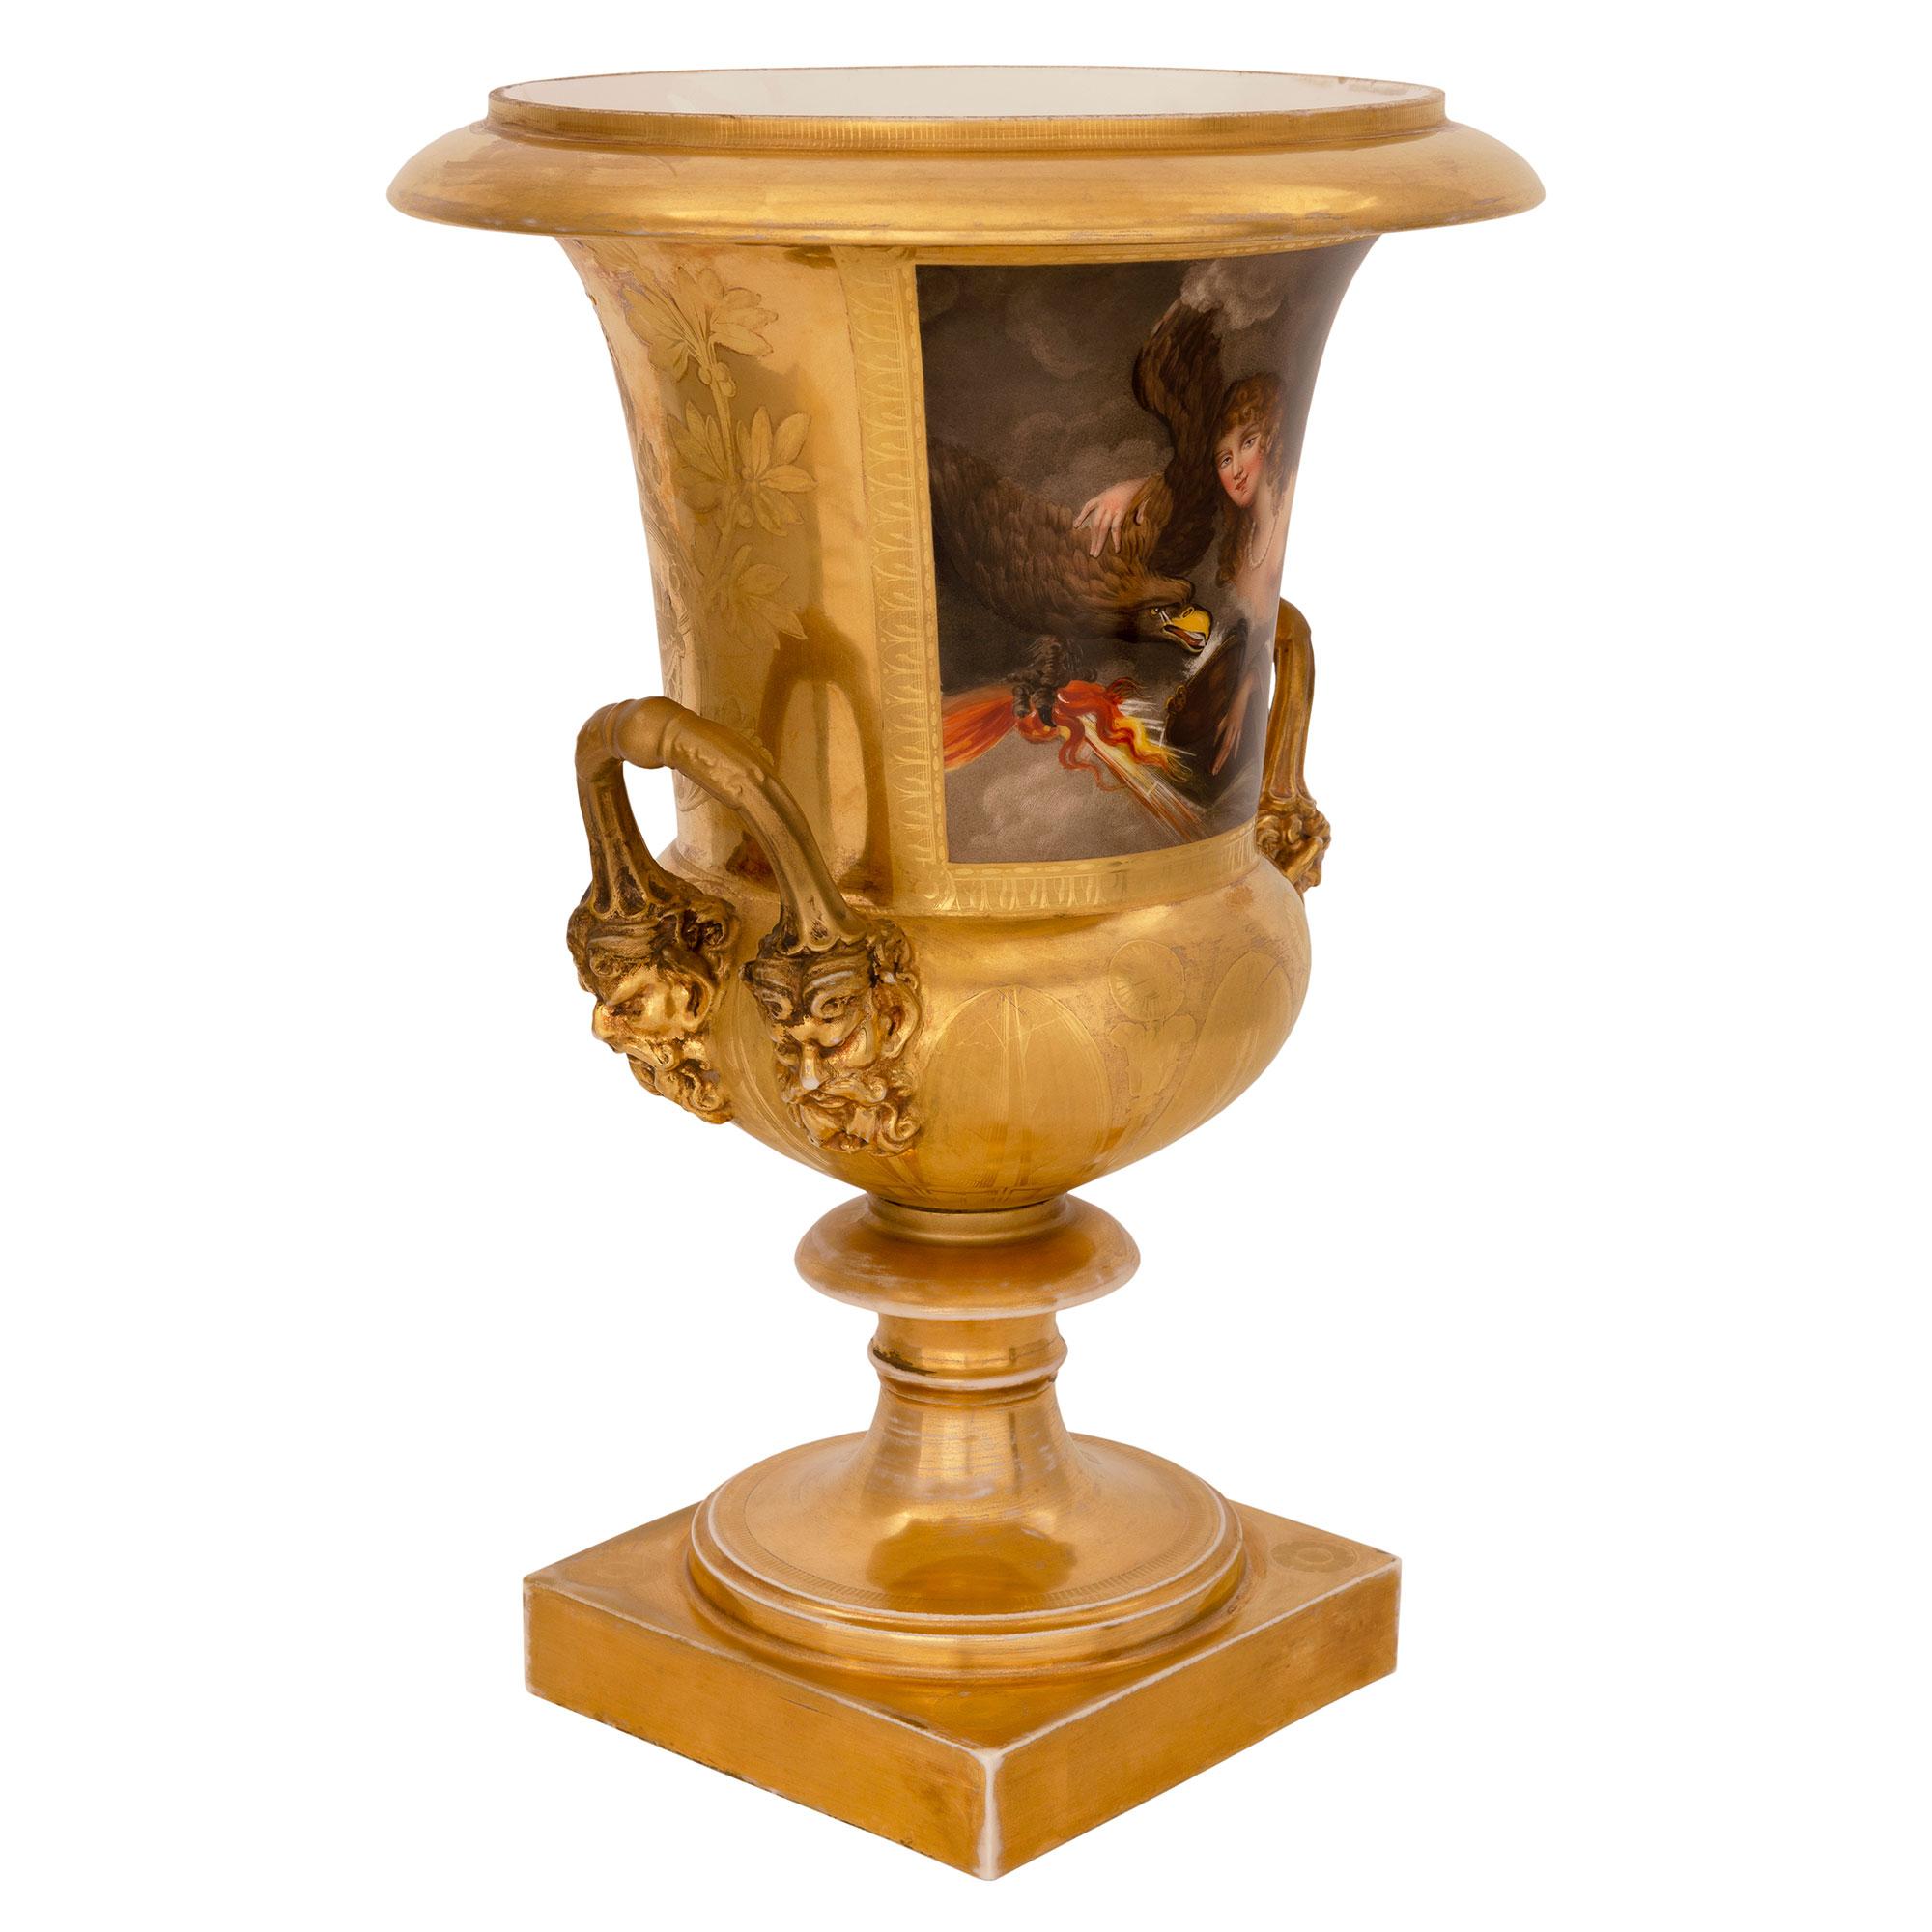 Une paire très élégante d'urnes en porcelaine de Paris de style néo-classique du 19ème siècle. Urnes en porcelaine de Paris. Chaque urne est surélevée par une base carrée sous un élégant piédestal en forme de socle moucheté. Les corps présentent de